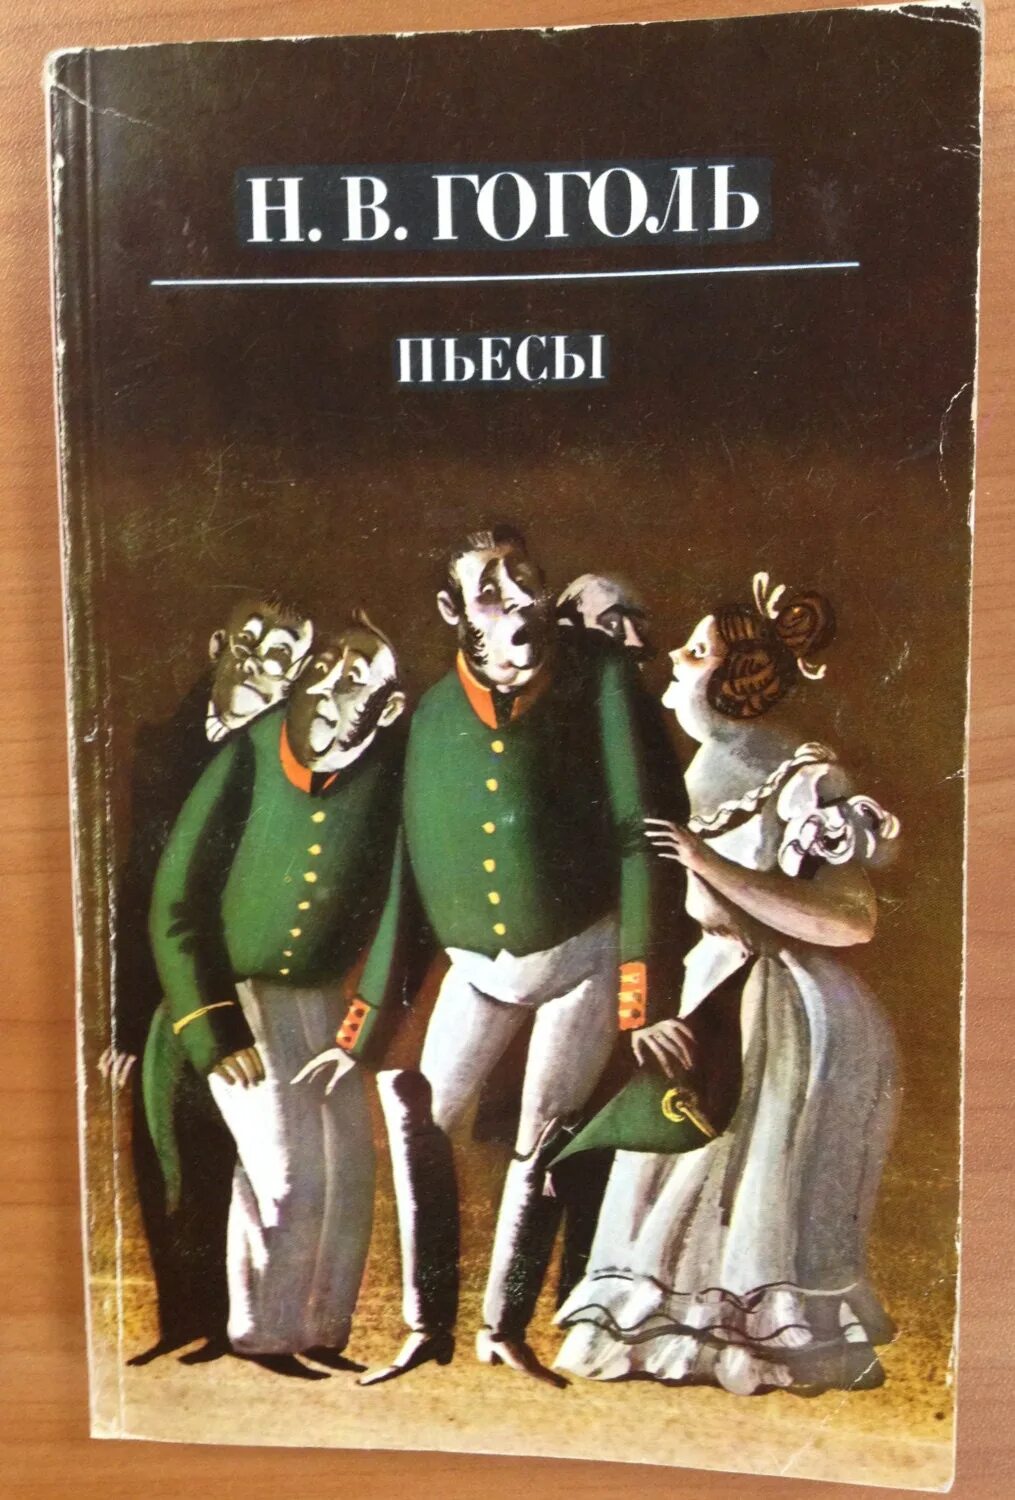 Книги про гоголя. Обложки книг Гоголя. Пьесы Гоголя. Драматургия Гоголя фото.